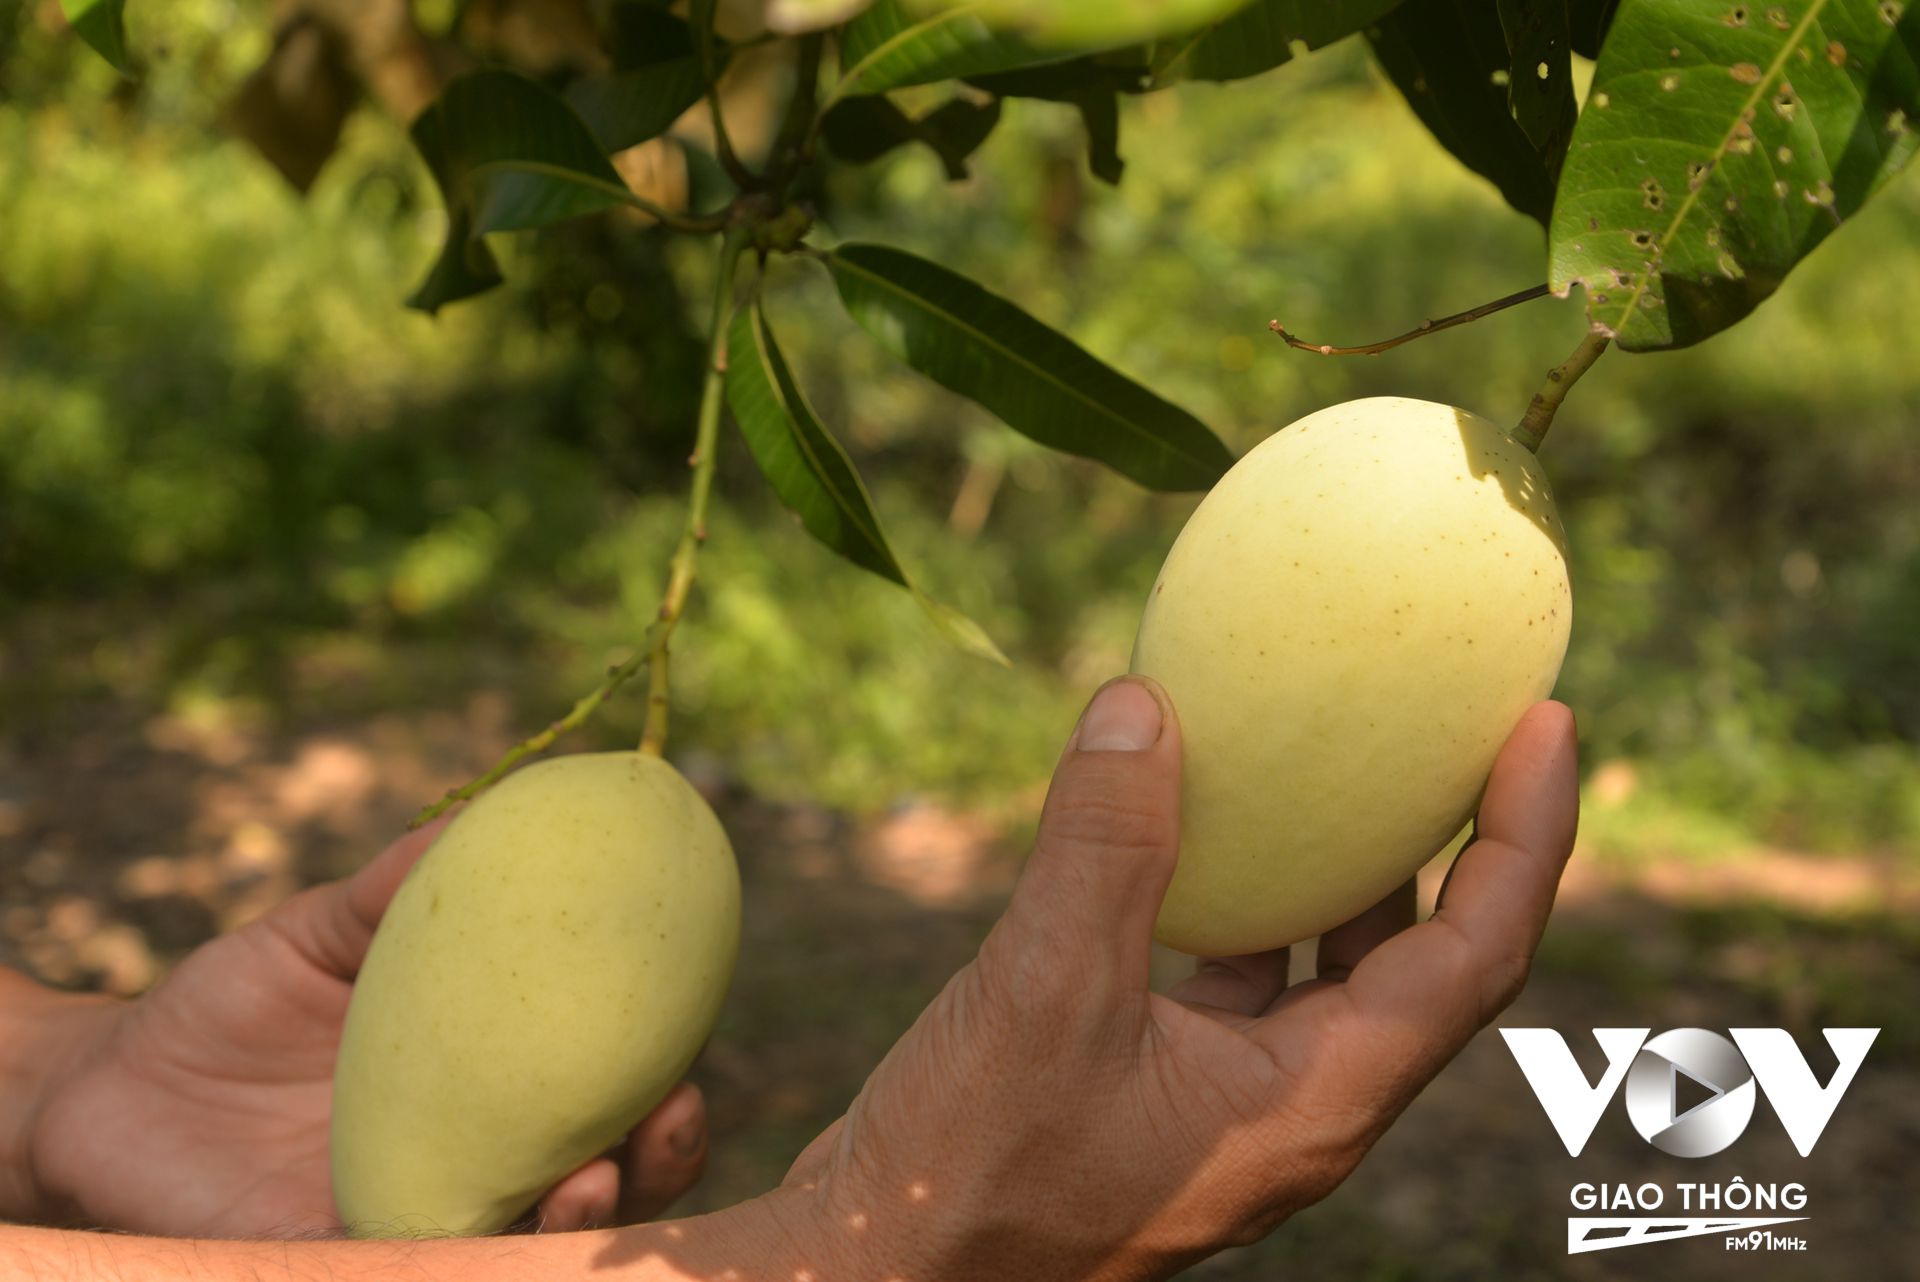 Đã đến lúc nông dân Việt cần áp dụng khoa học để sản xuất trái cây vừa sạch, ngon, đẹp để cạnh tranh với hàng ngoại